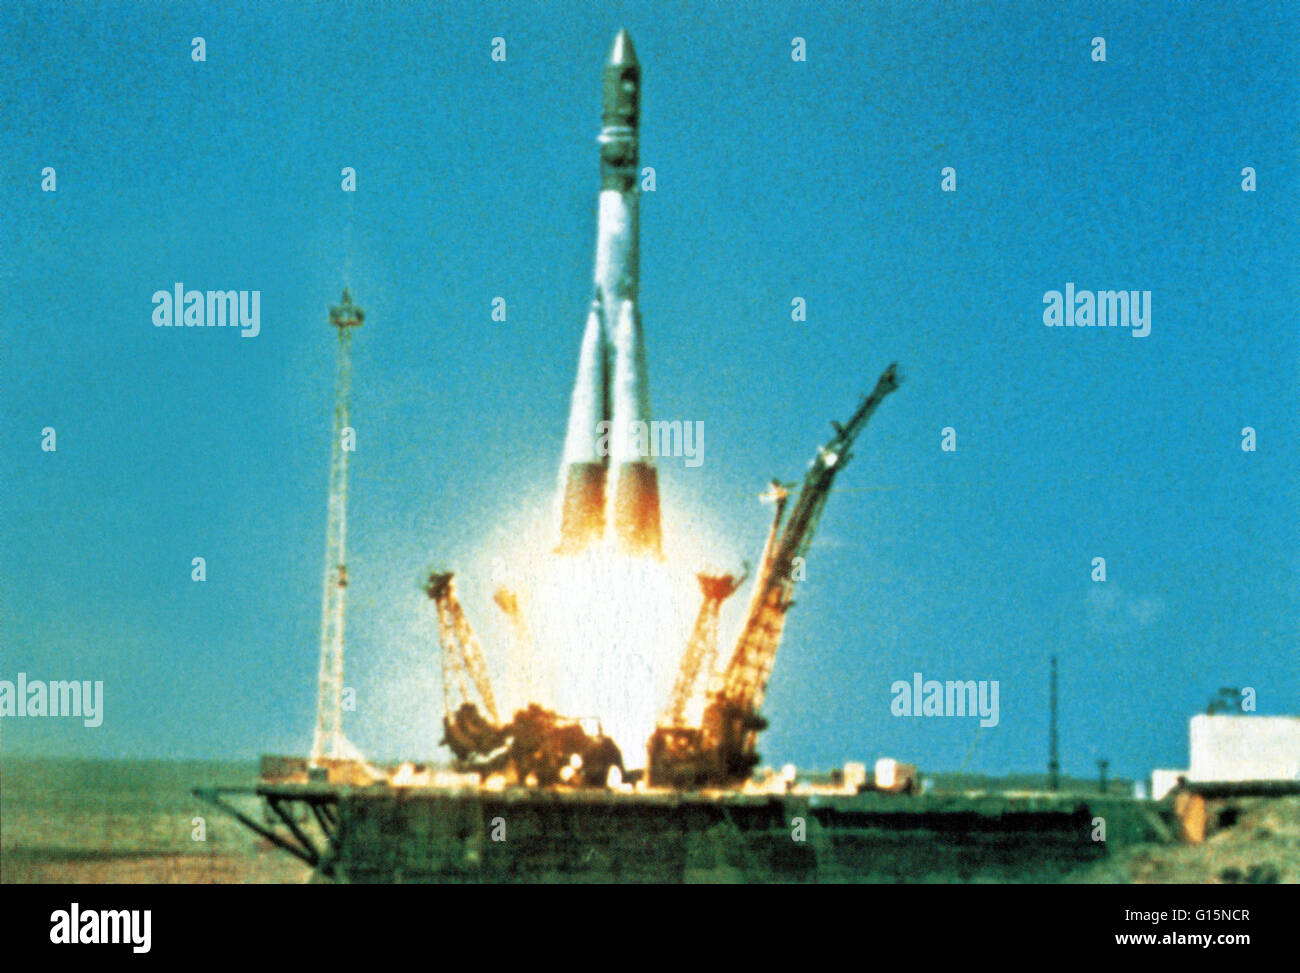 Il Vostok booster lascia il cosmodromo di launch pad n. 1, portante cosmonauta sovietico Yuri Gagarin verso l orbita della Terra il 12 aprile 1961. Gagarin (1934-1968) ha effettuato per la prima volta un volo spaziale umano, orbitanti attorno alla terra una volta in Vostok 1 veicolo spaziale in un volo t Foto Stock